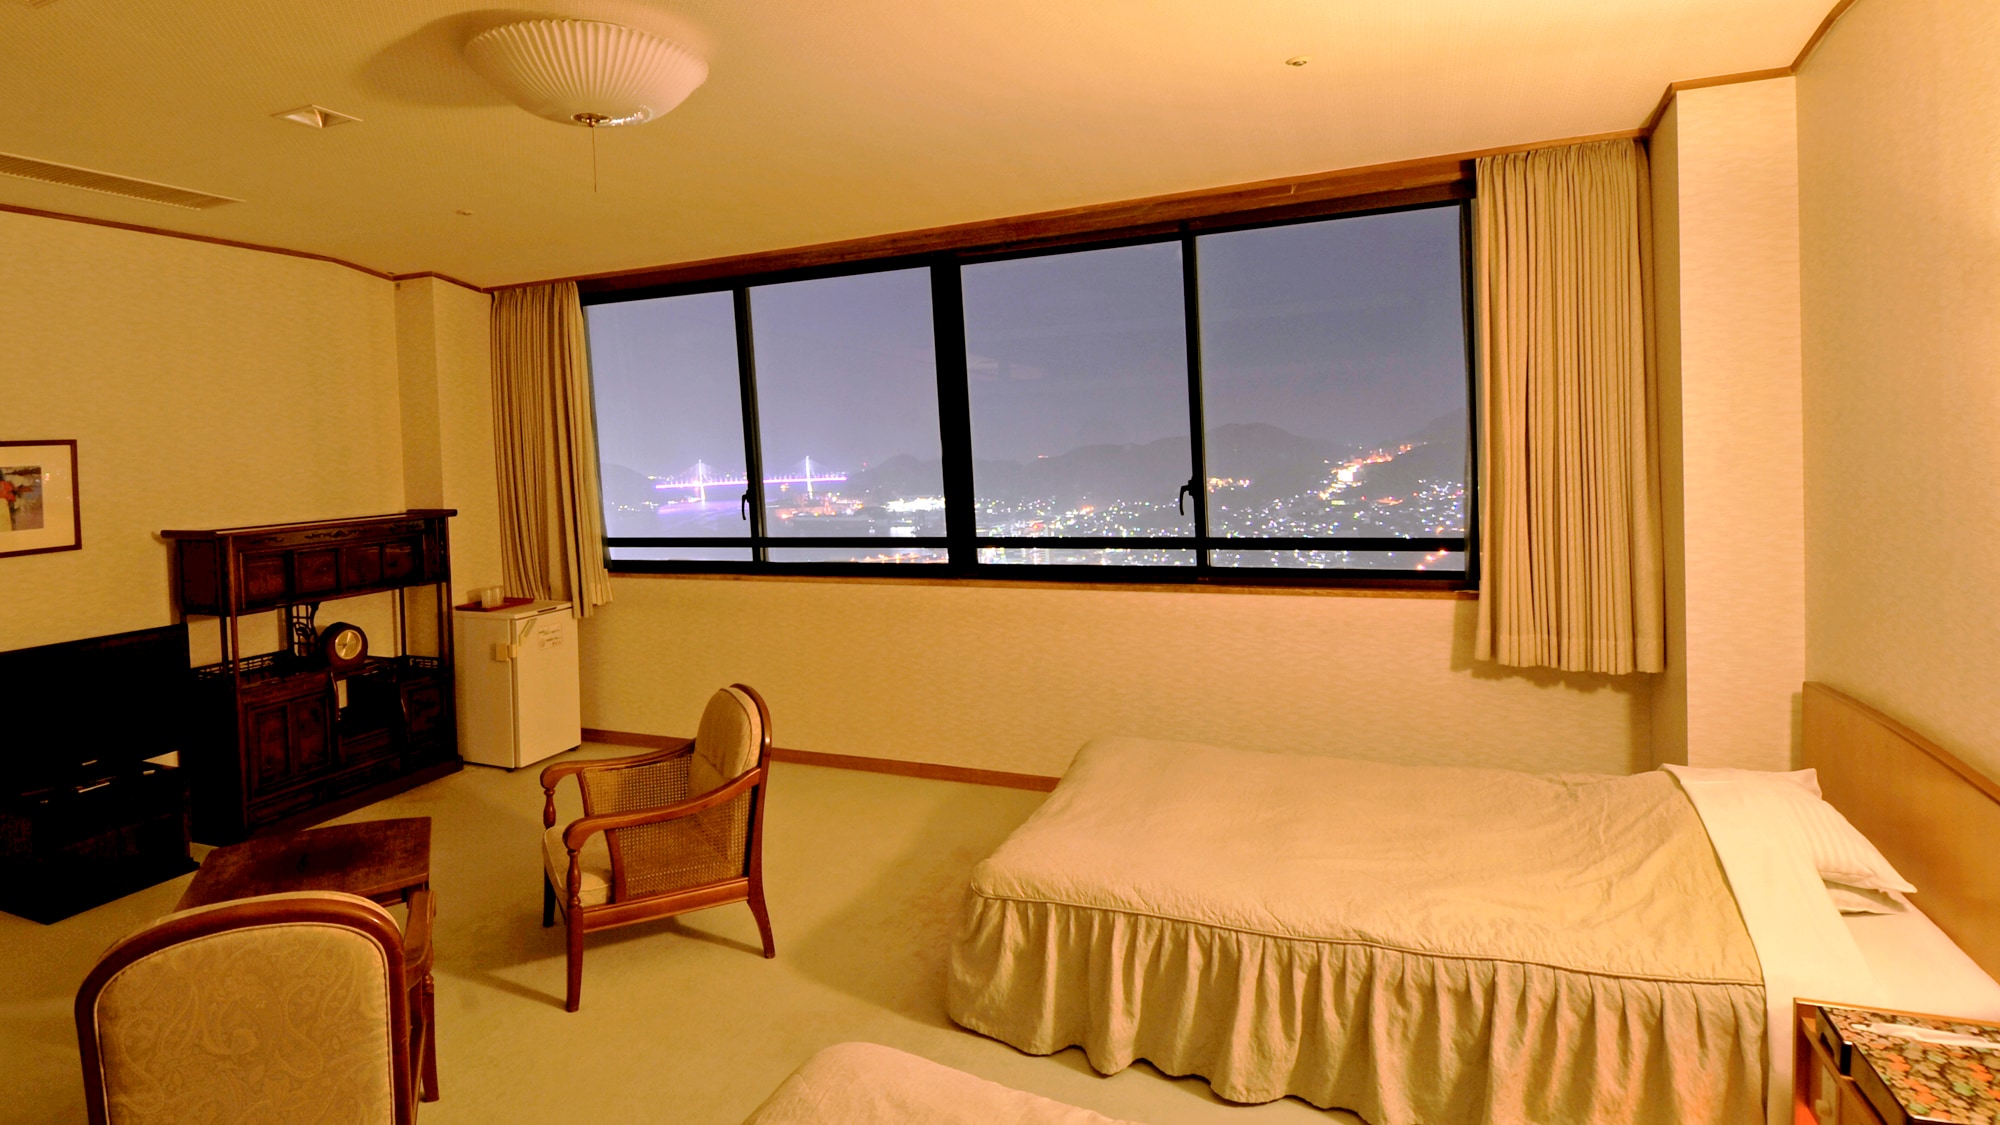 ◆ 日西合璧的房间，全窗可欣赏夜景。 10榻榻米+双床型